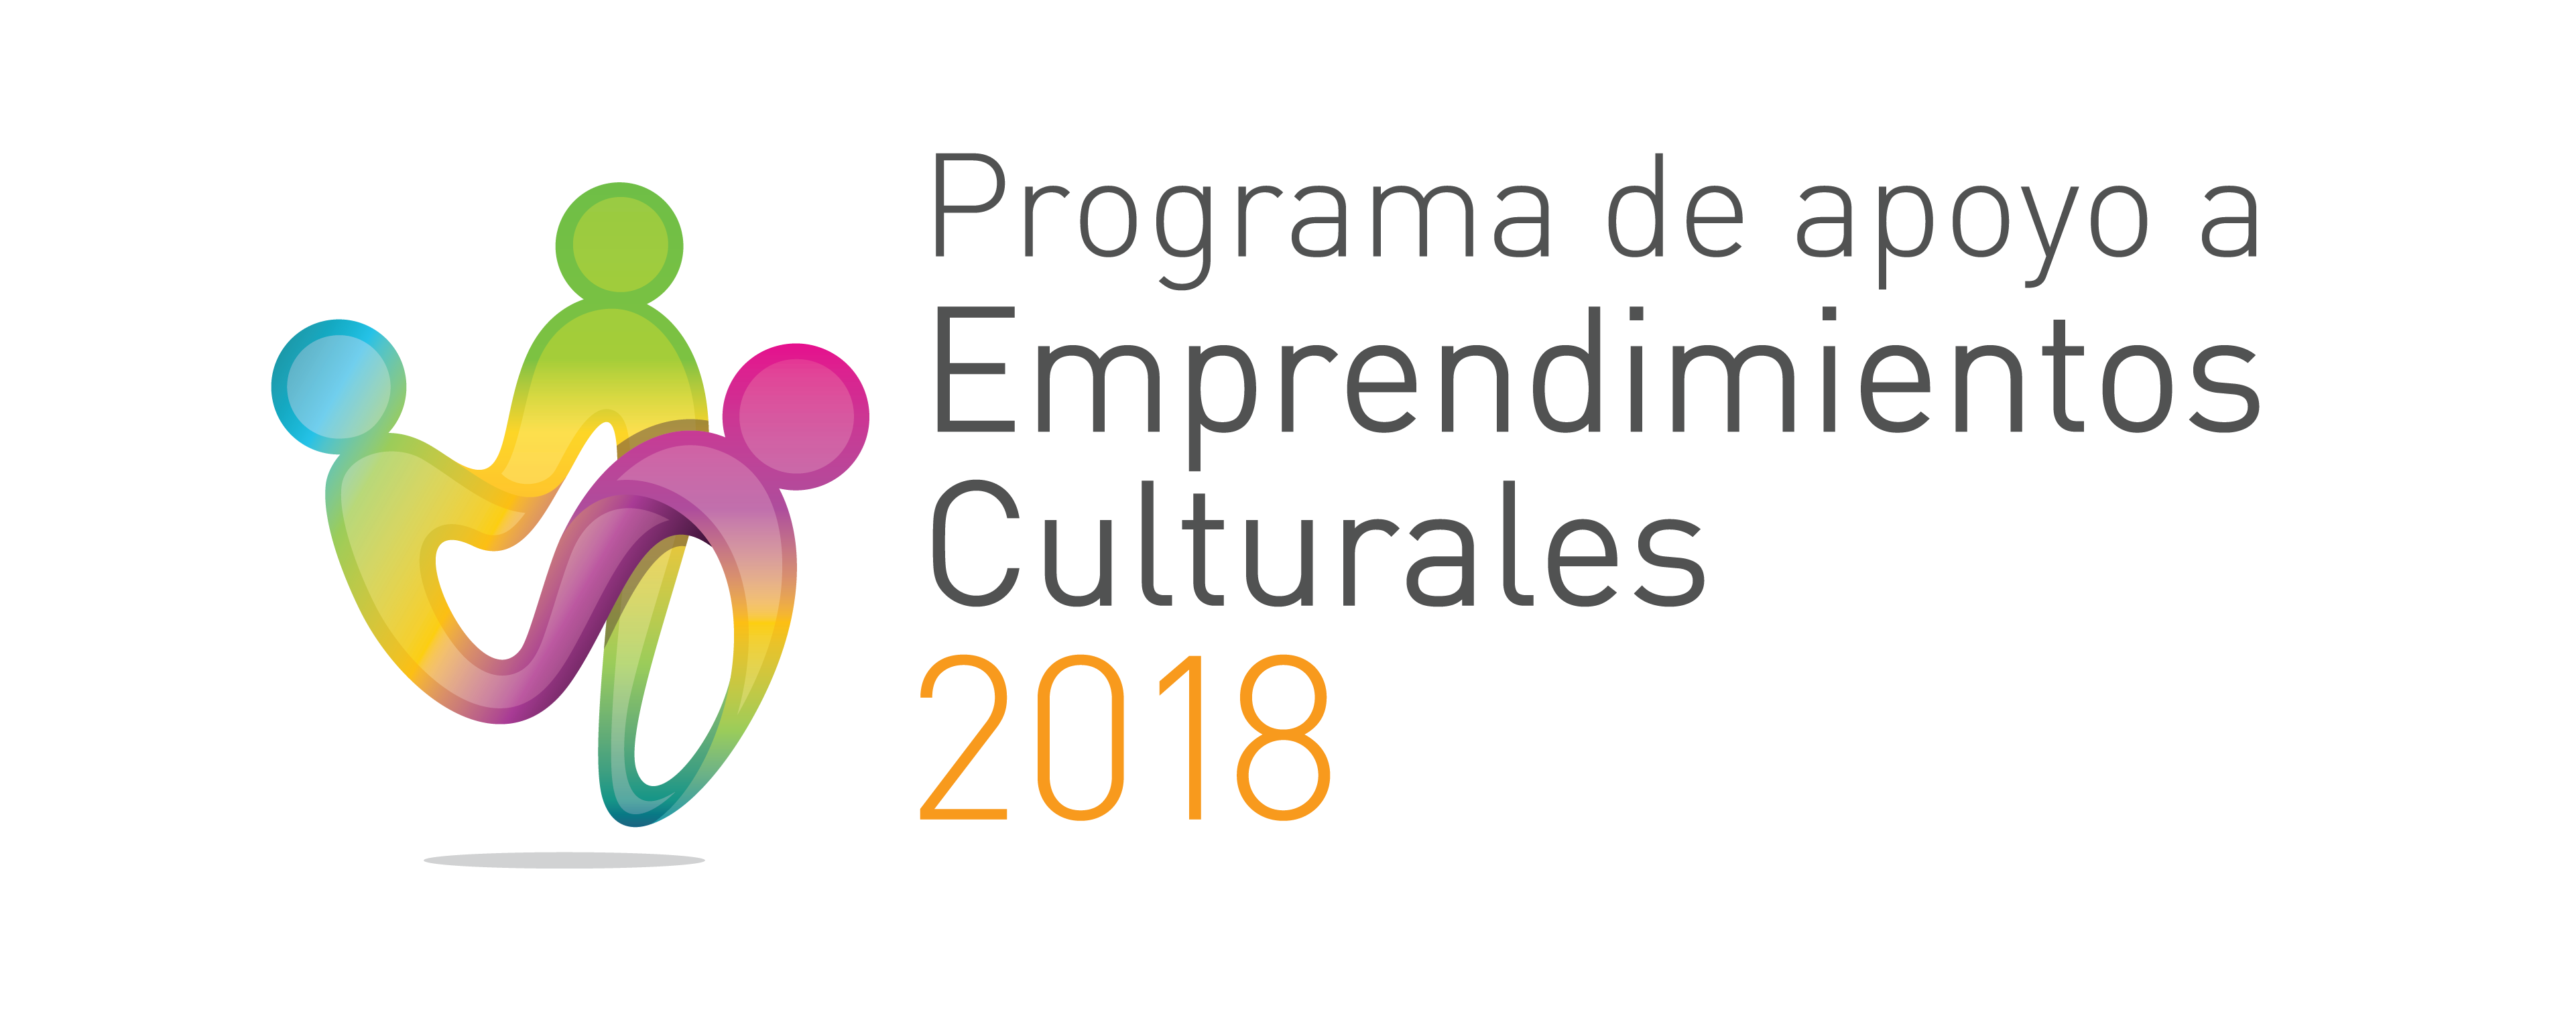 Programa de apoyo a Emprendimientos Culturales 2018 imagen